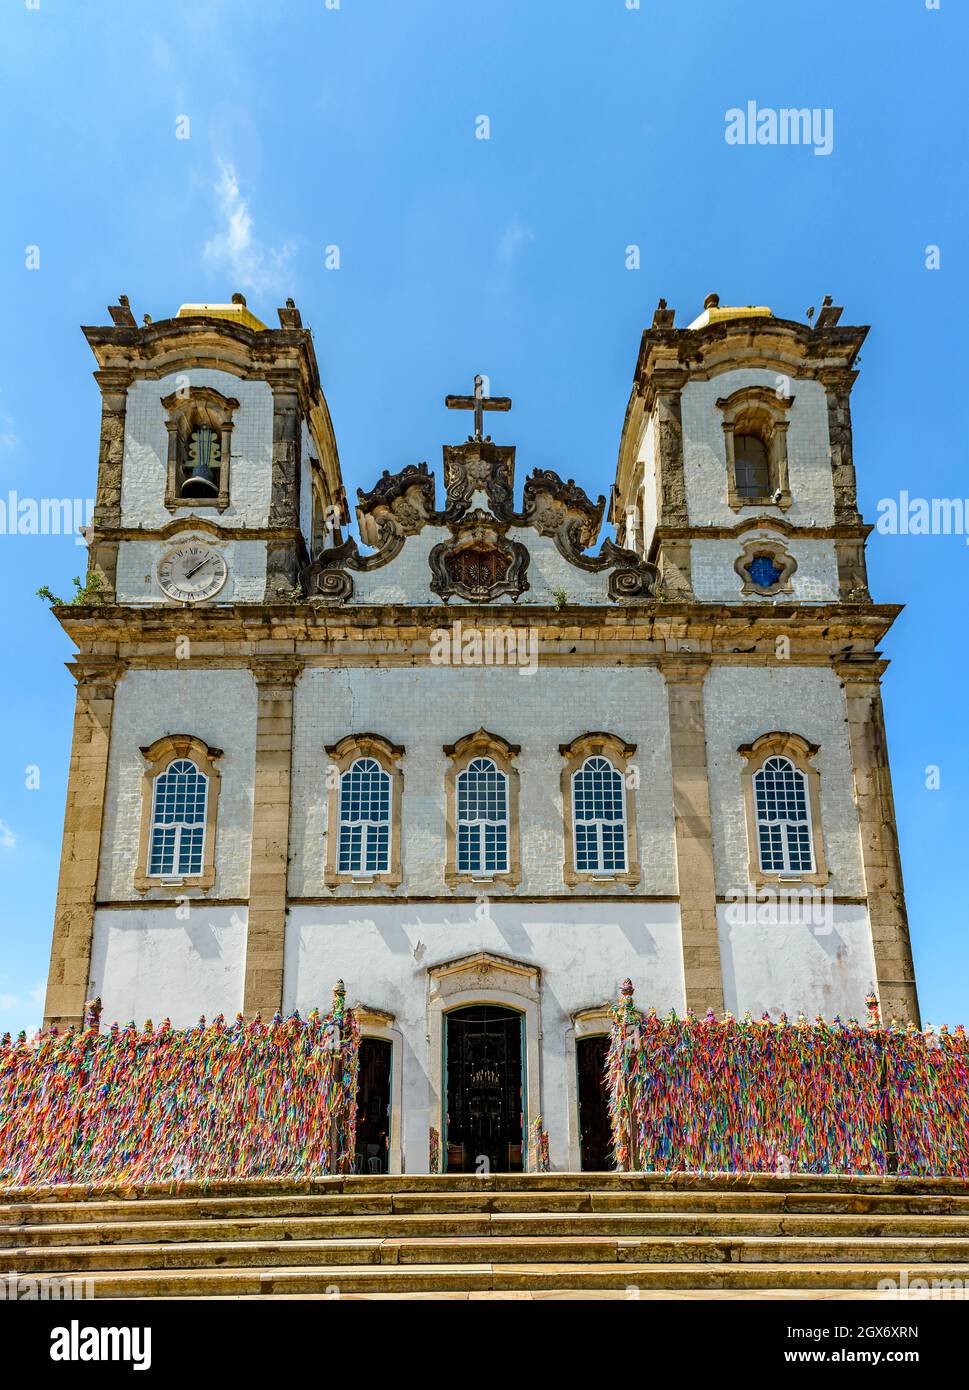 Fassade der berühmten Kirche von Nosso Senhor do Bonfim in Salvador, Bahia, wo eine der wichtigsten kulturellen und religiösen Veranstaltungen der Stadt stattfindet. Stockfoto